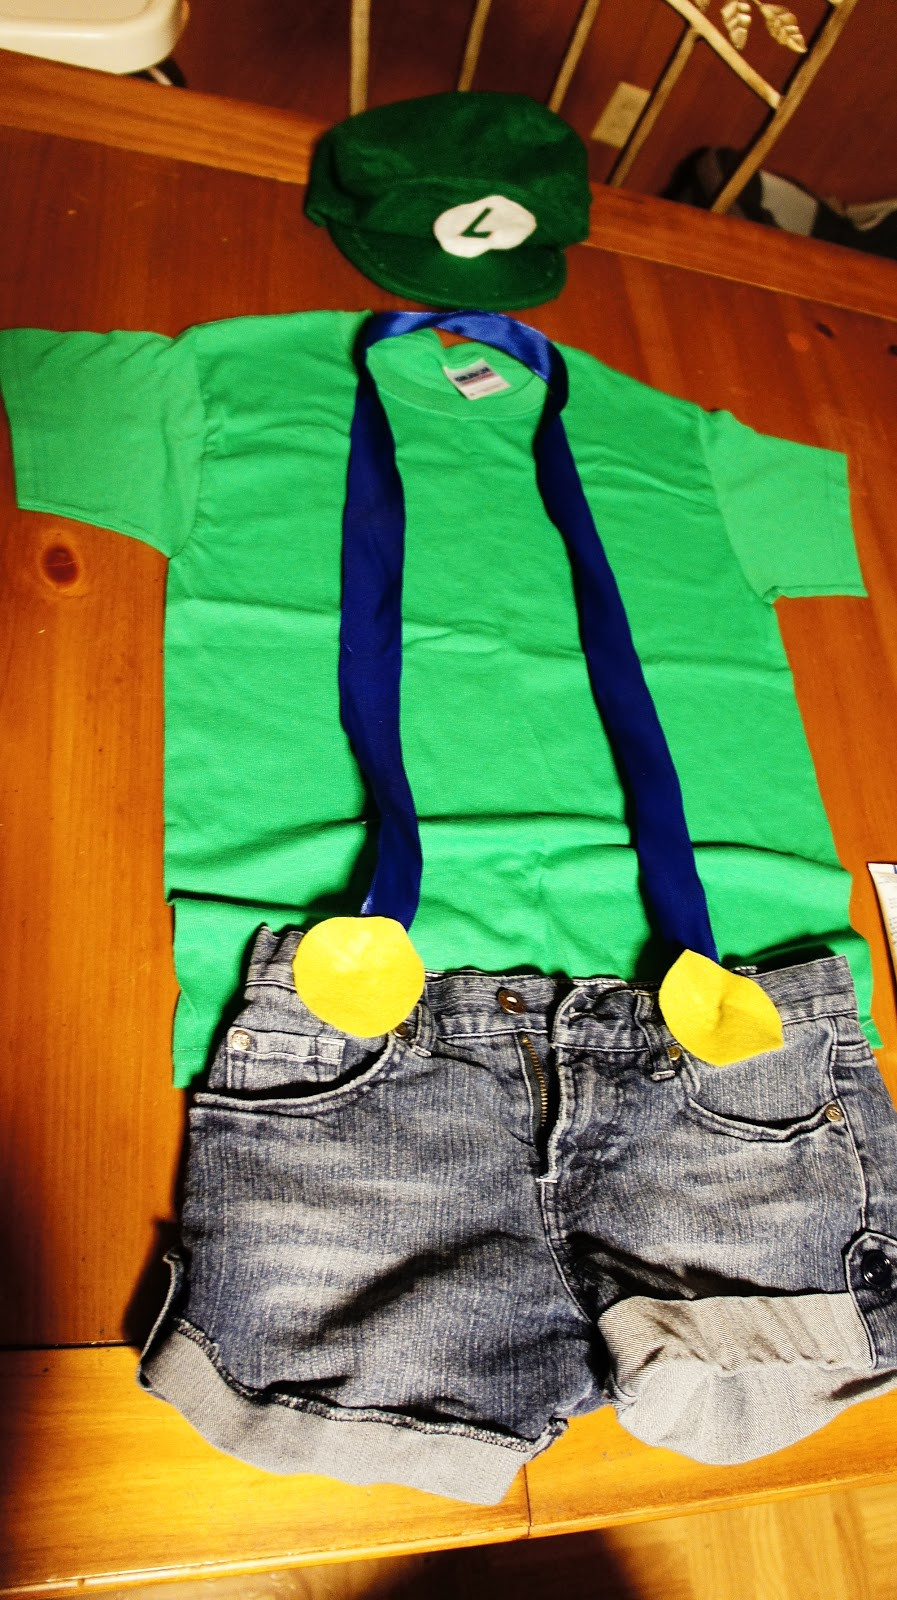 Best ideas about DIY Luigi Costume
. Save or Pin DIY Mario & Luigi Costumes Now.